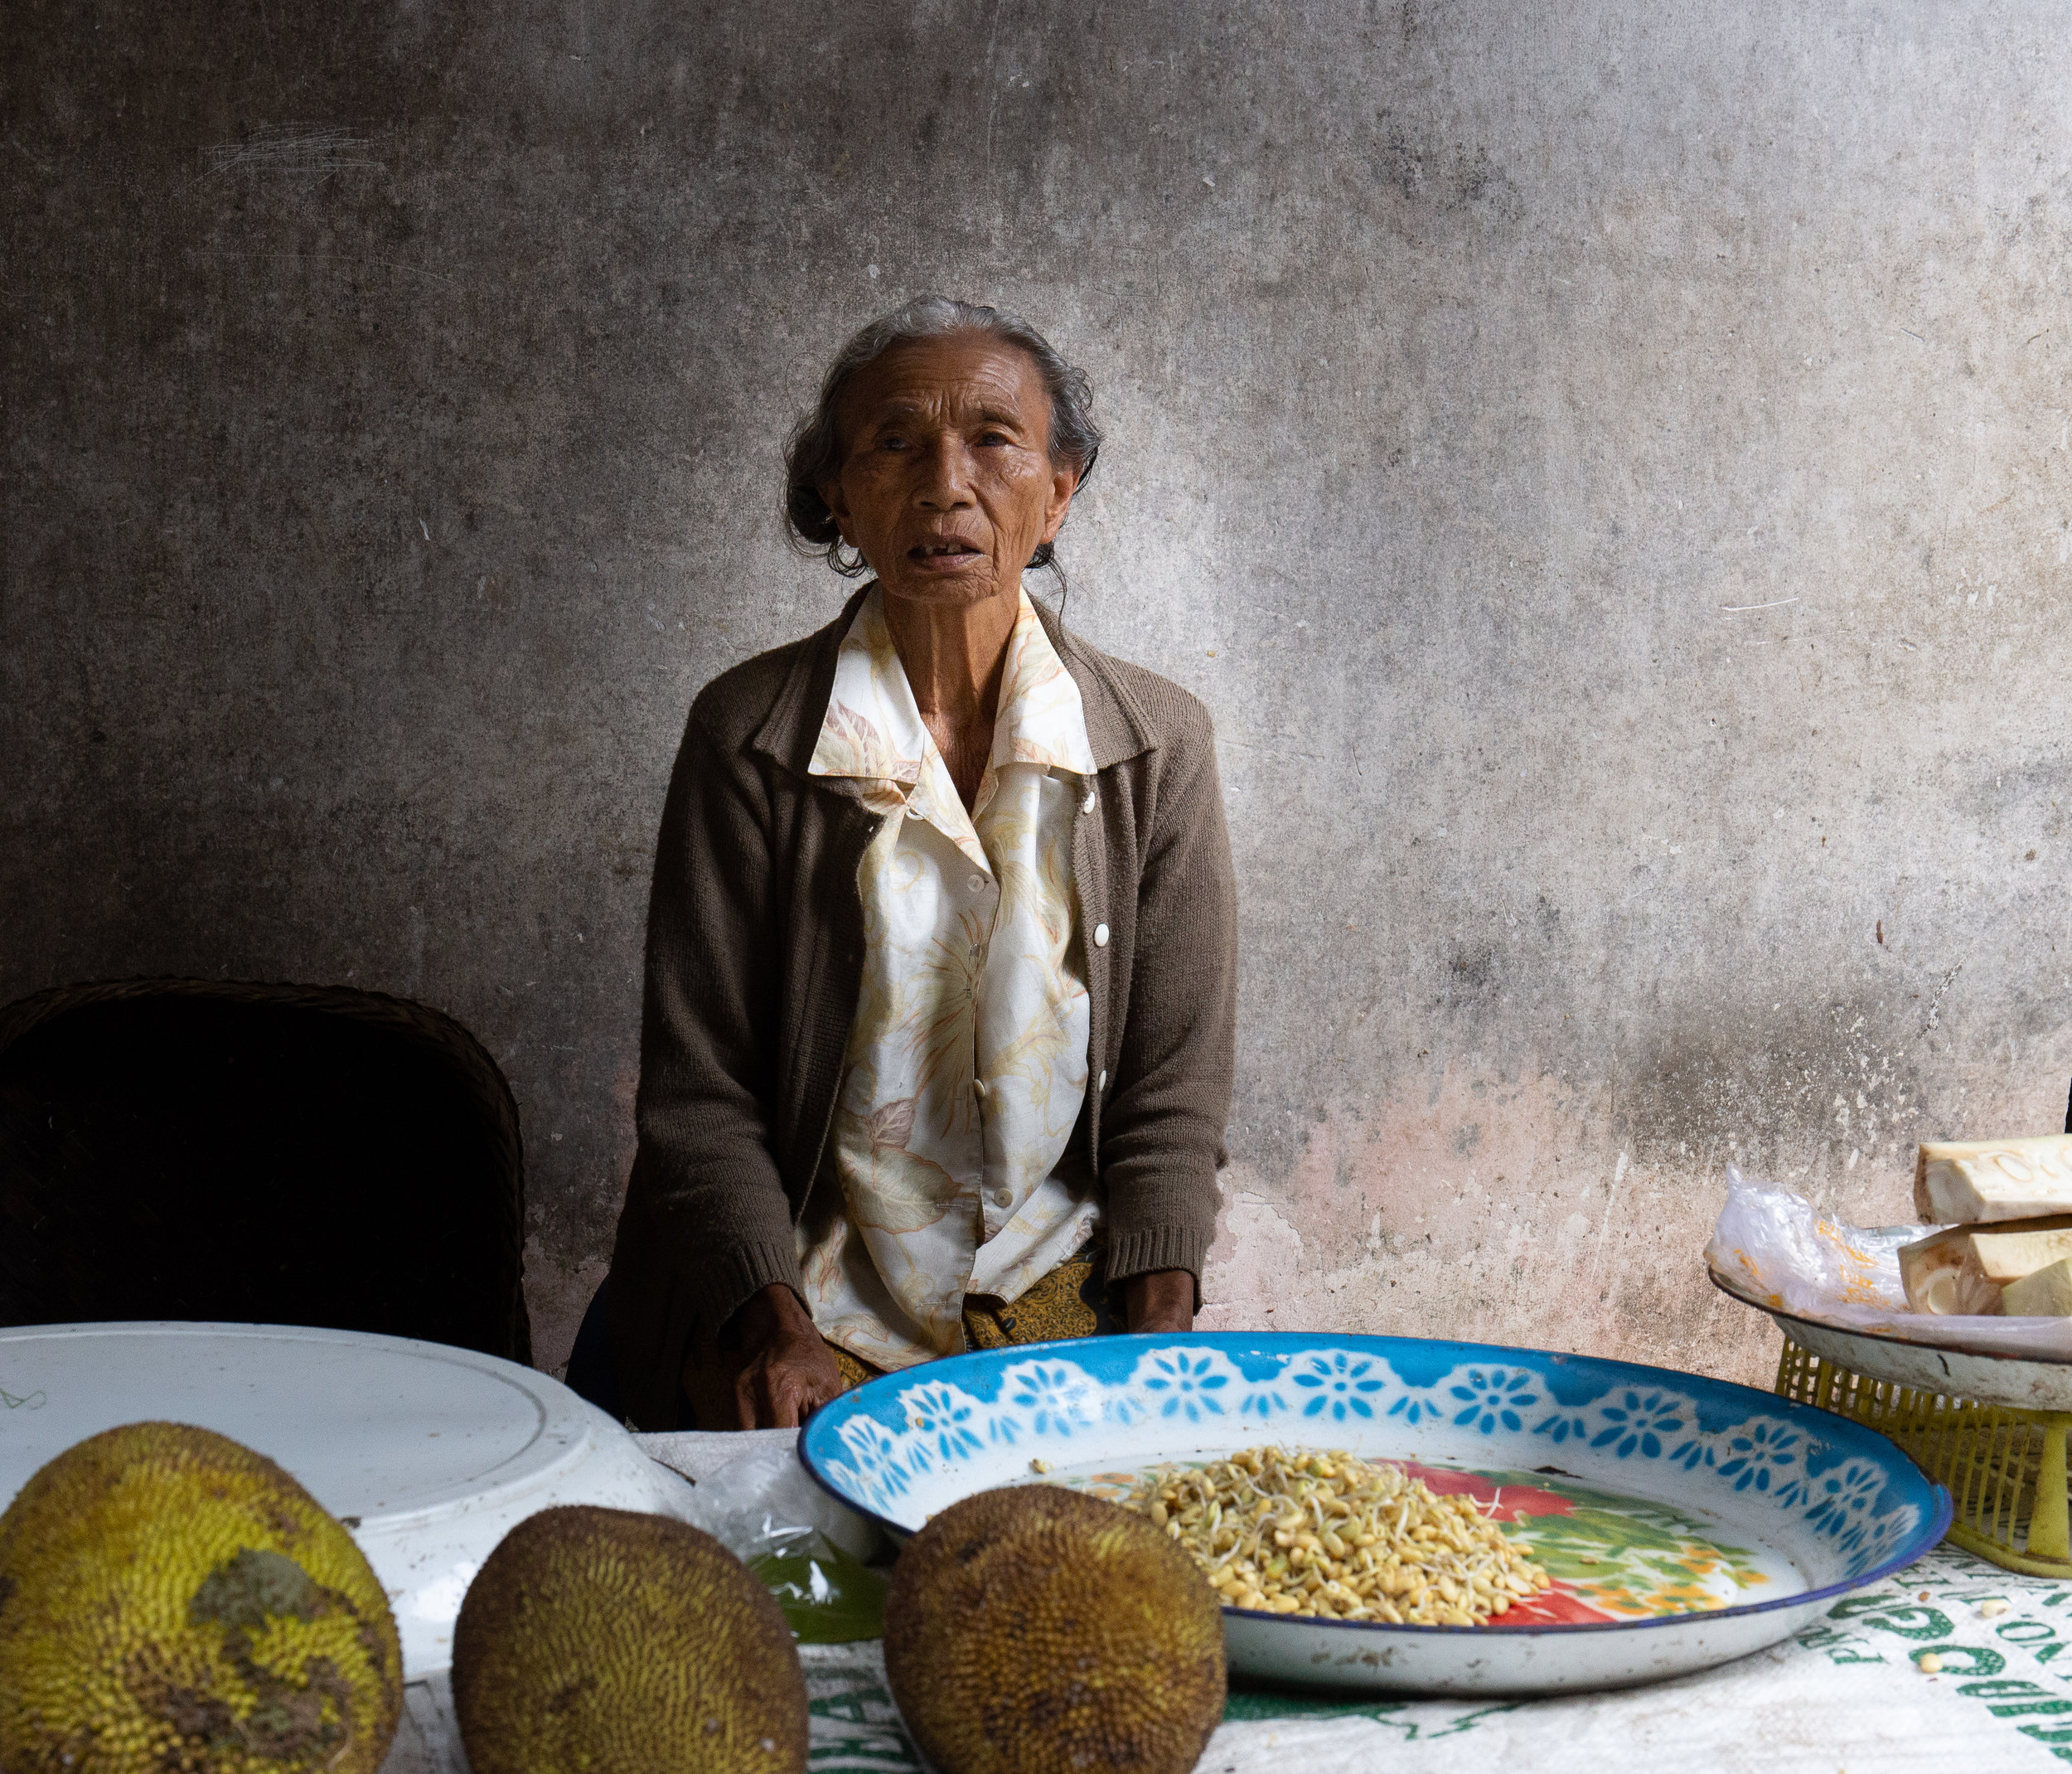 Ubud Market Lady selling Jackfruit